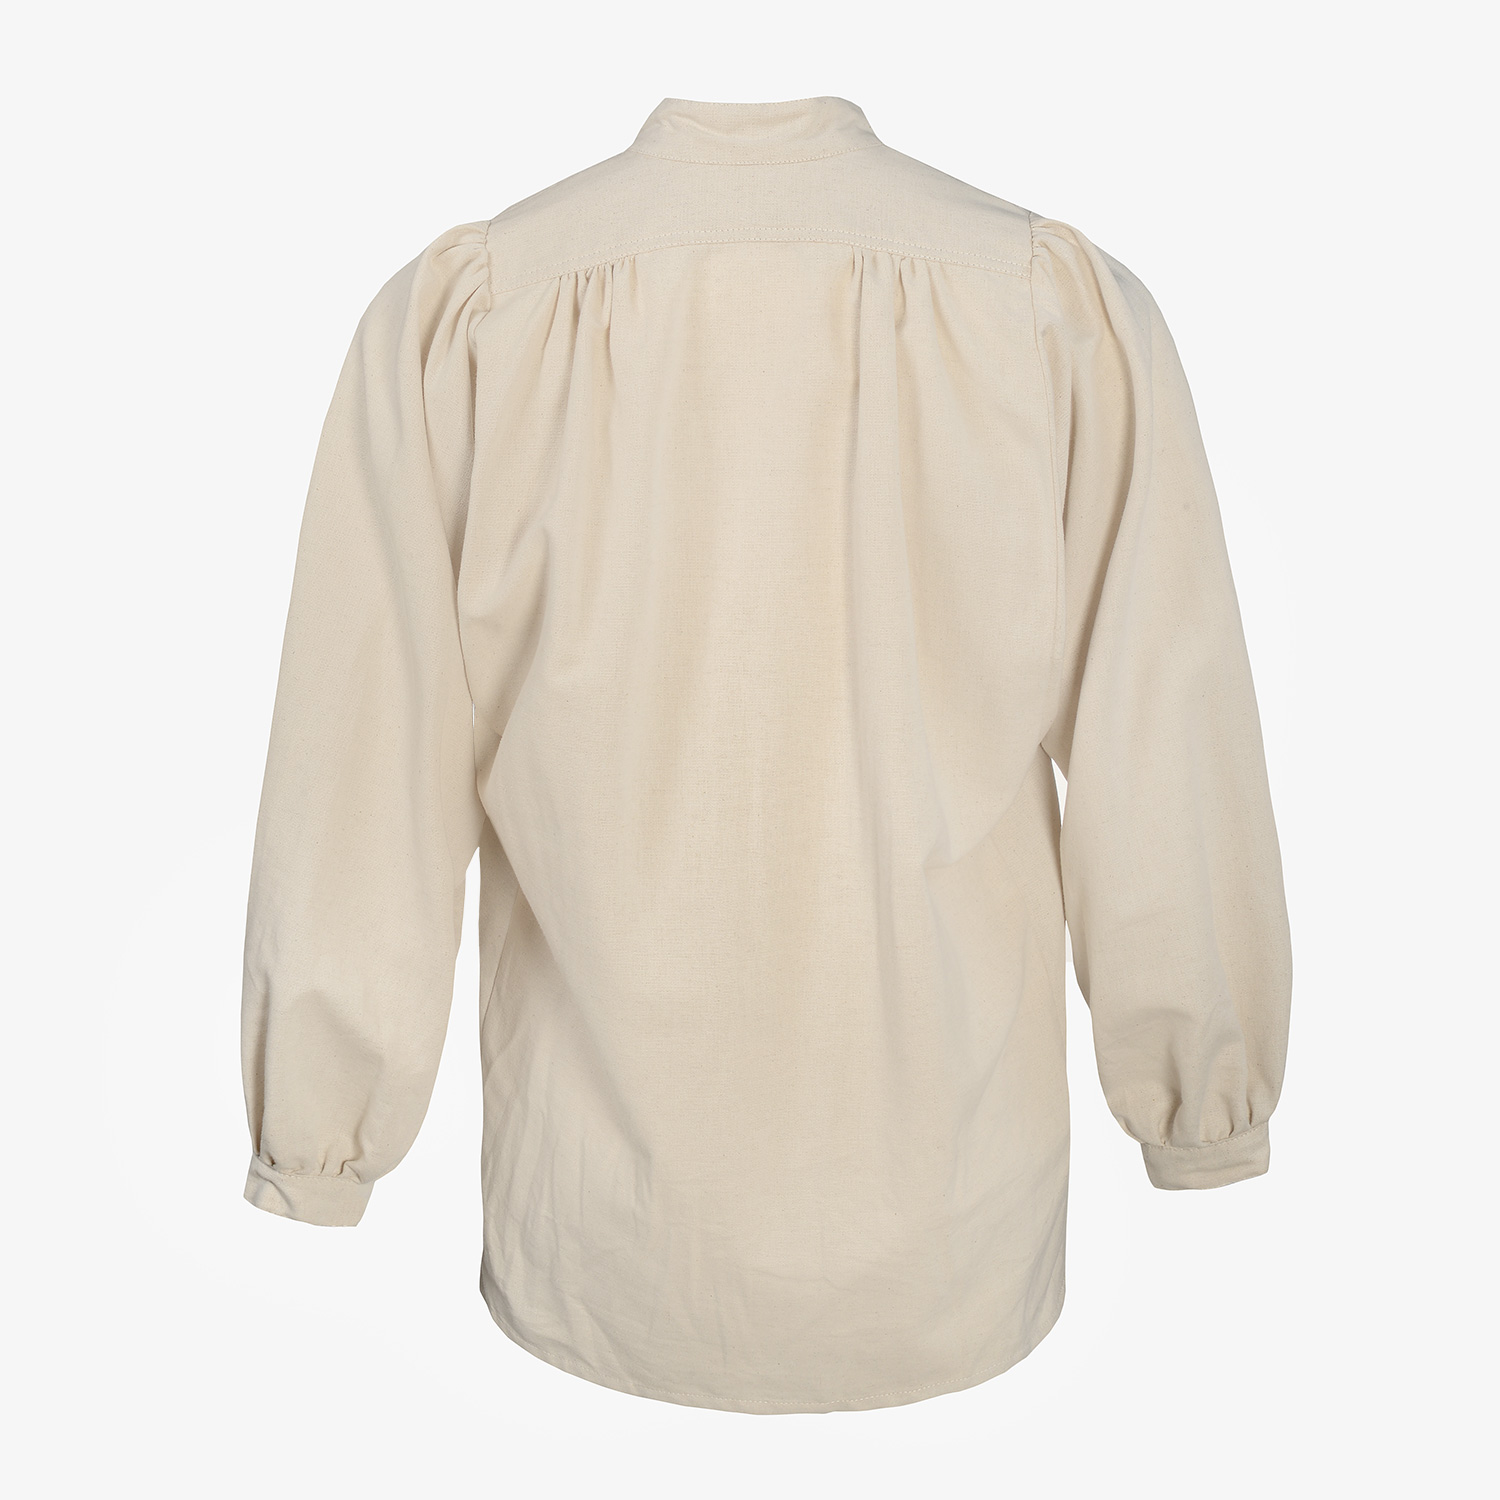 VILLE guild shirt cotton/linen